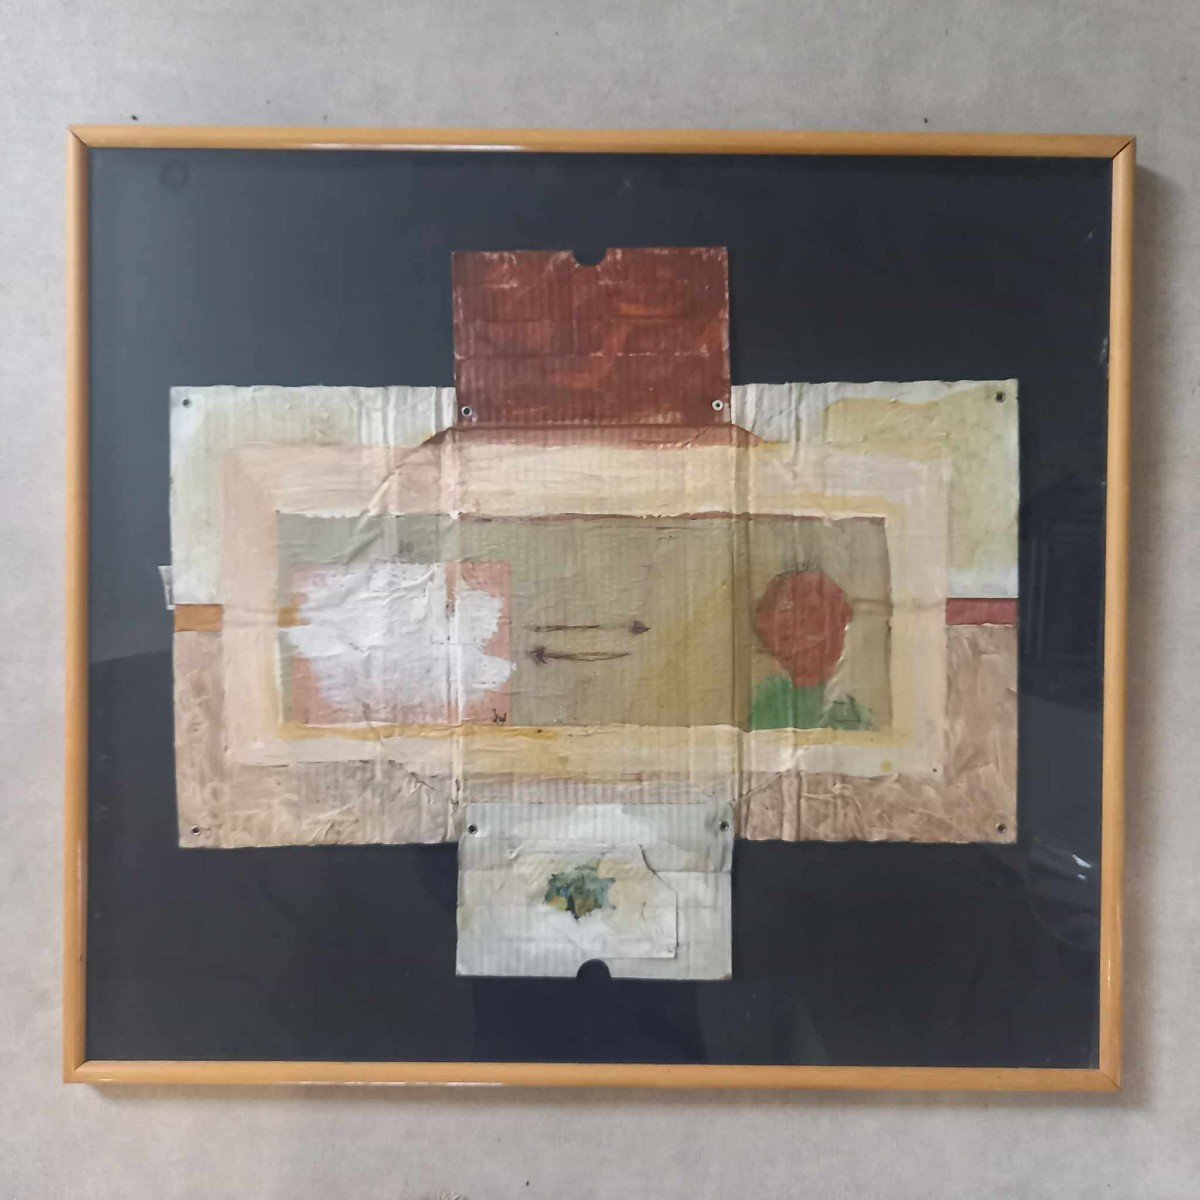 Daniel Spehr "der Ethnologue" Oil On Corrugated Cardboard, Framed Under Glass